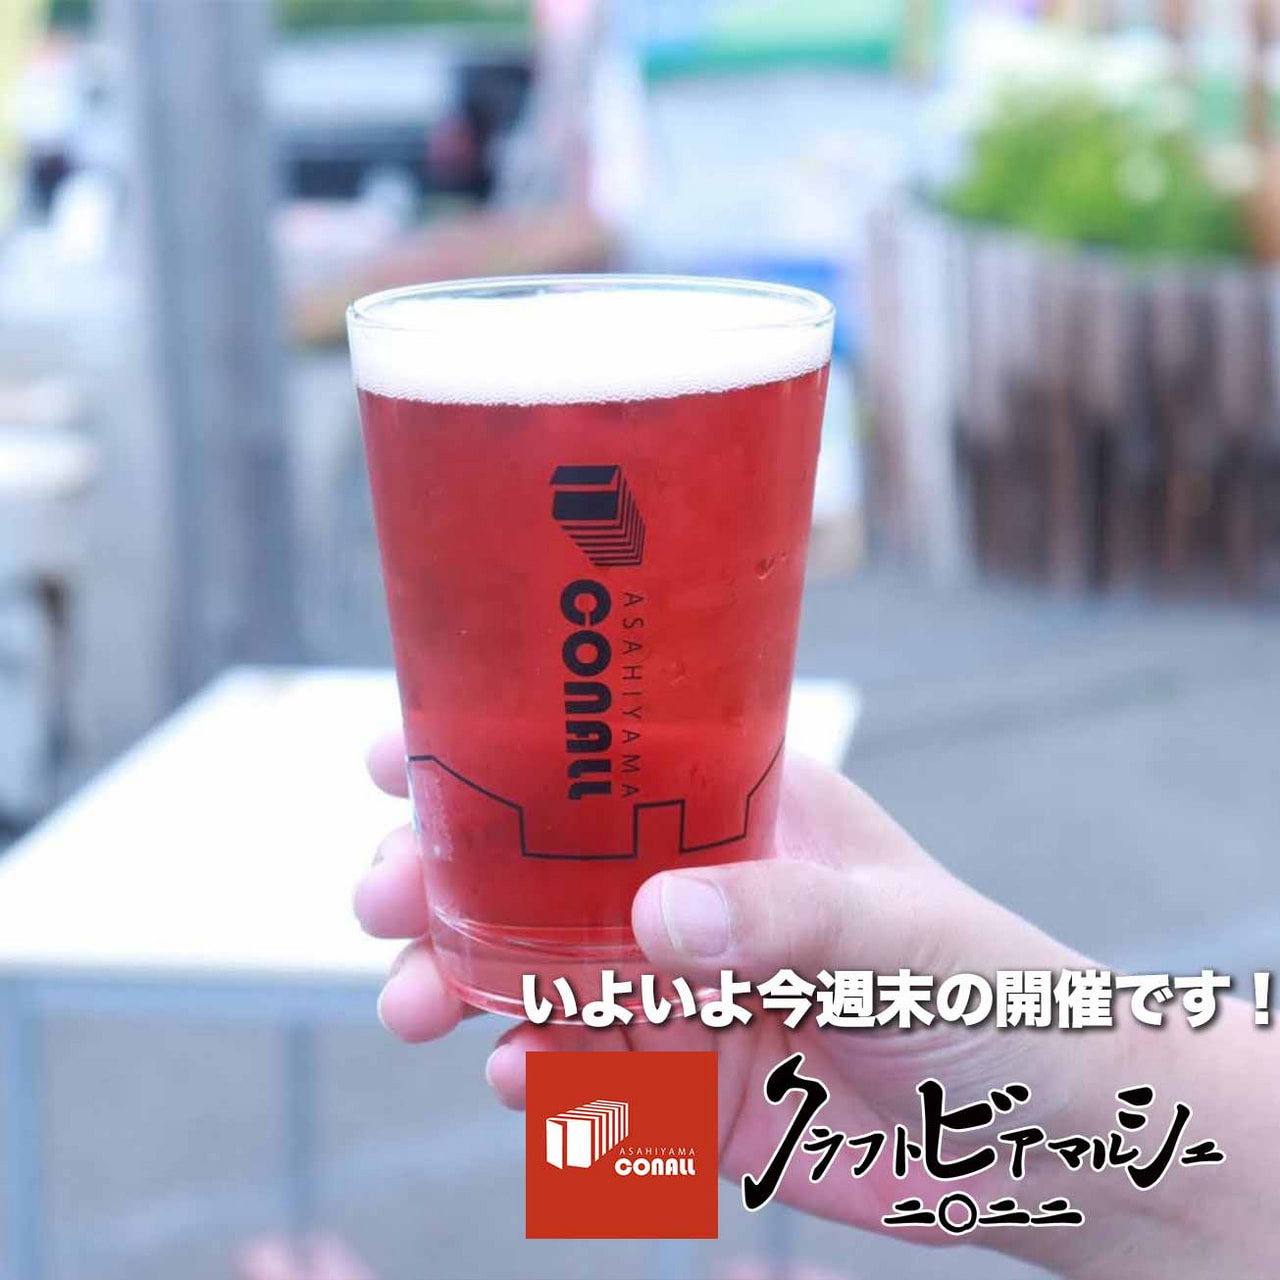 いよいよ今週末の開催です！旭山コナール自社テント&カフェビールリスト公開